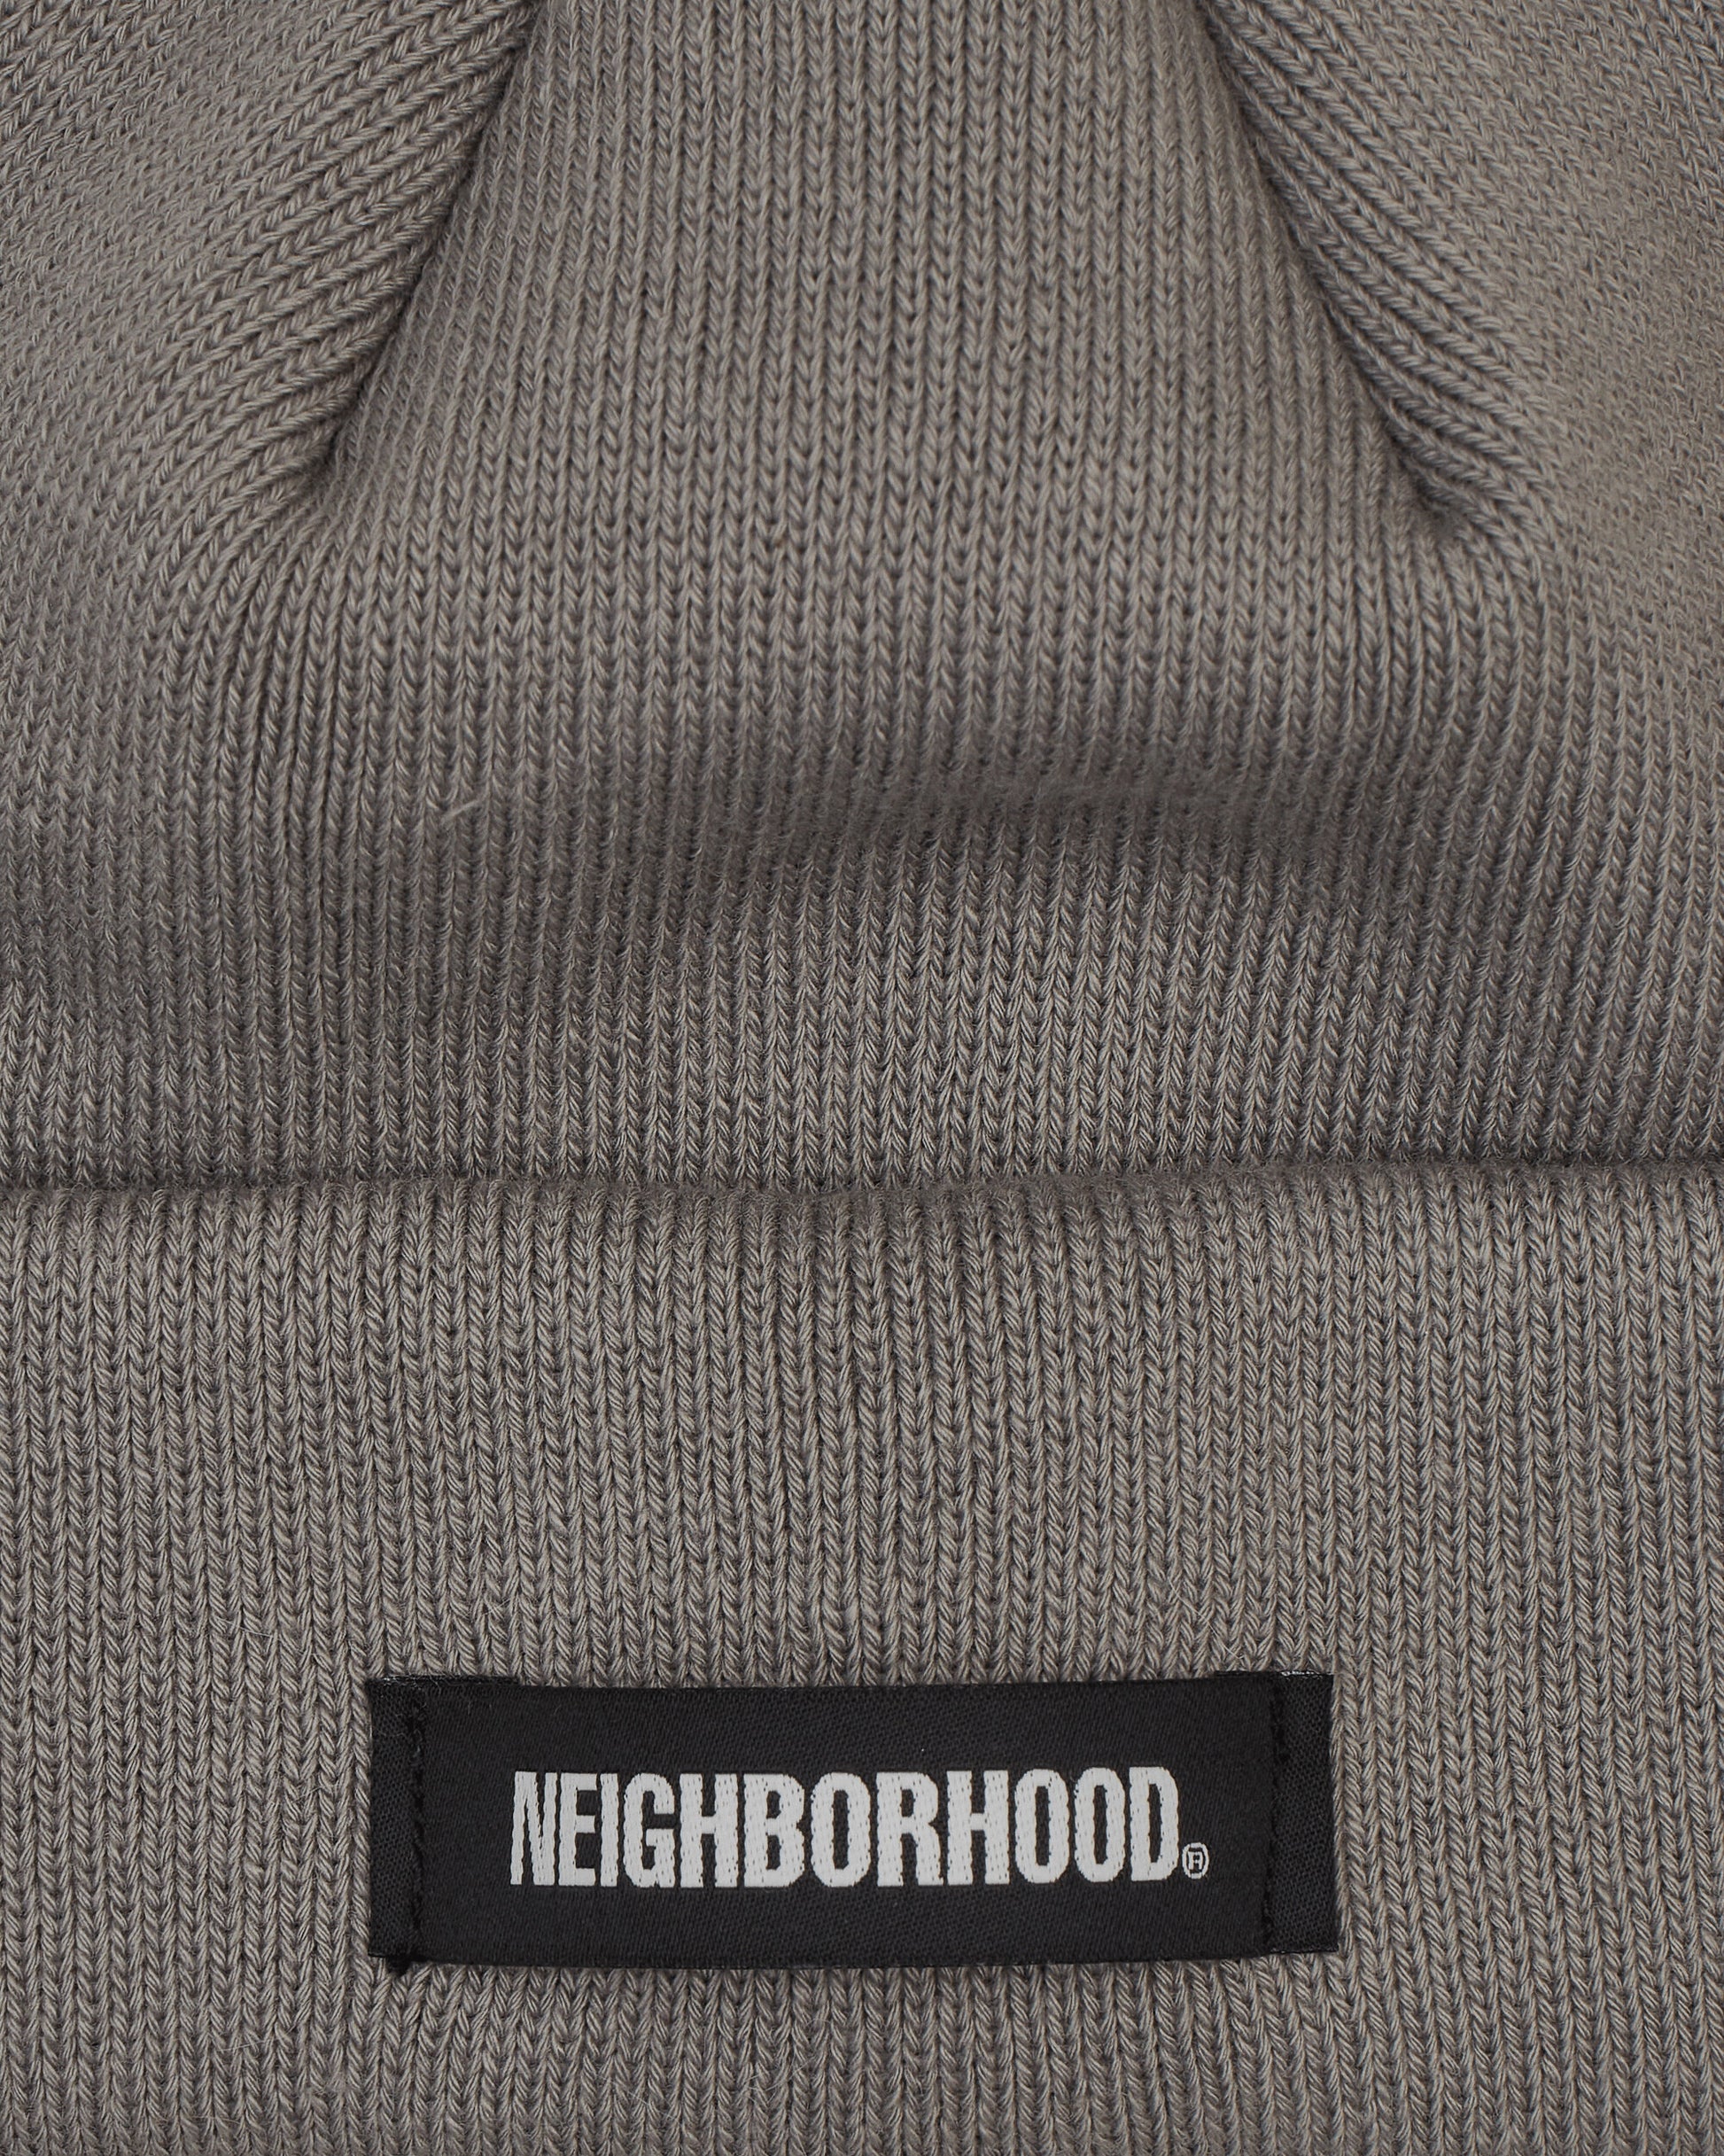 Neighborhood Beanie Mini Grey Hats Beanies 241YGNH-HT02 GY